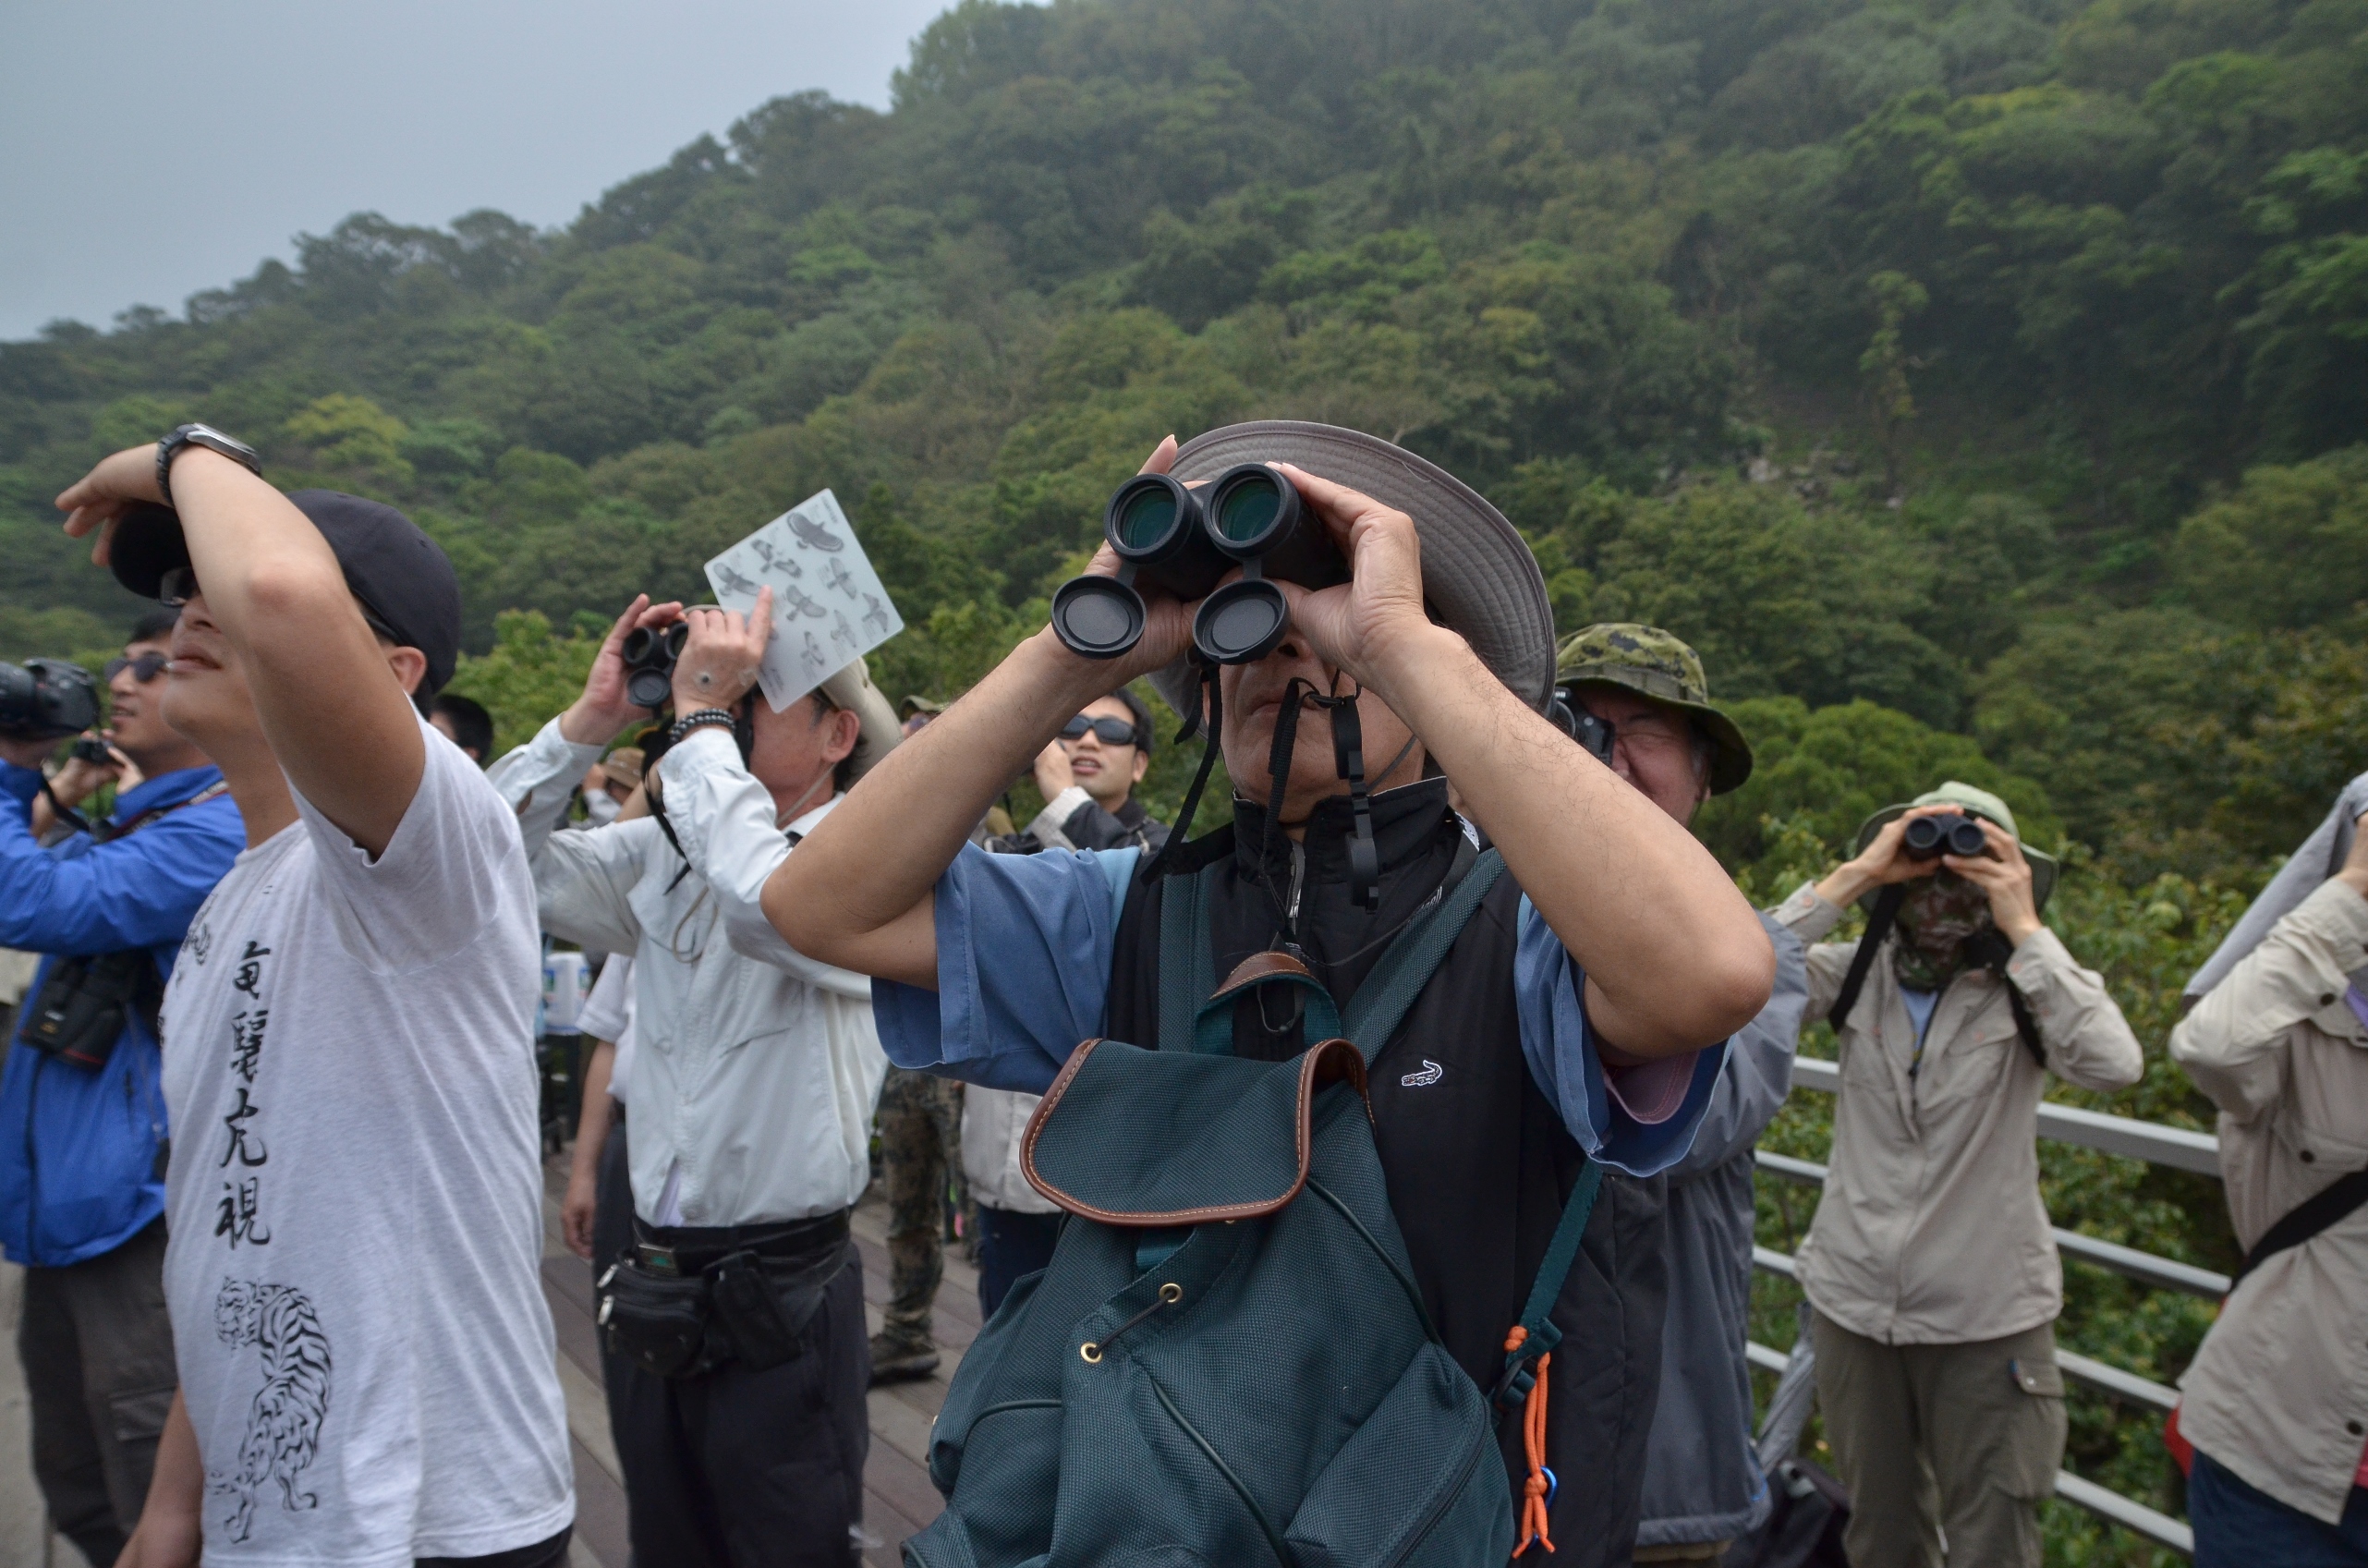 圖說】台北鳥會導覽老師帶領民眾觀察猛禽_台北市野鳥學會提供